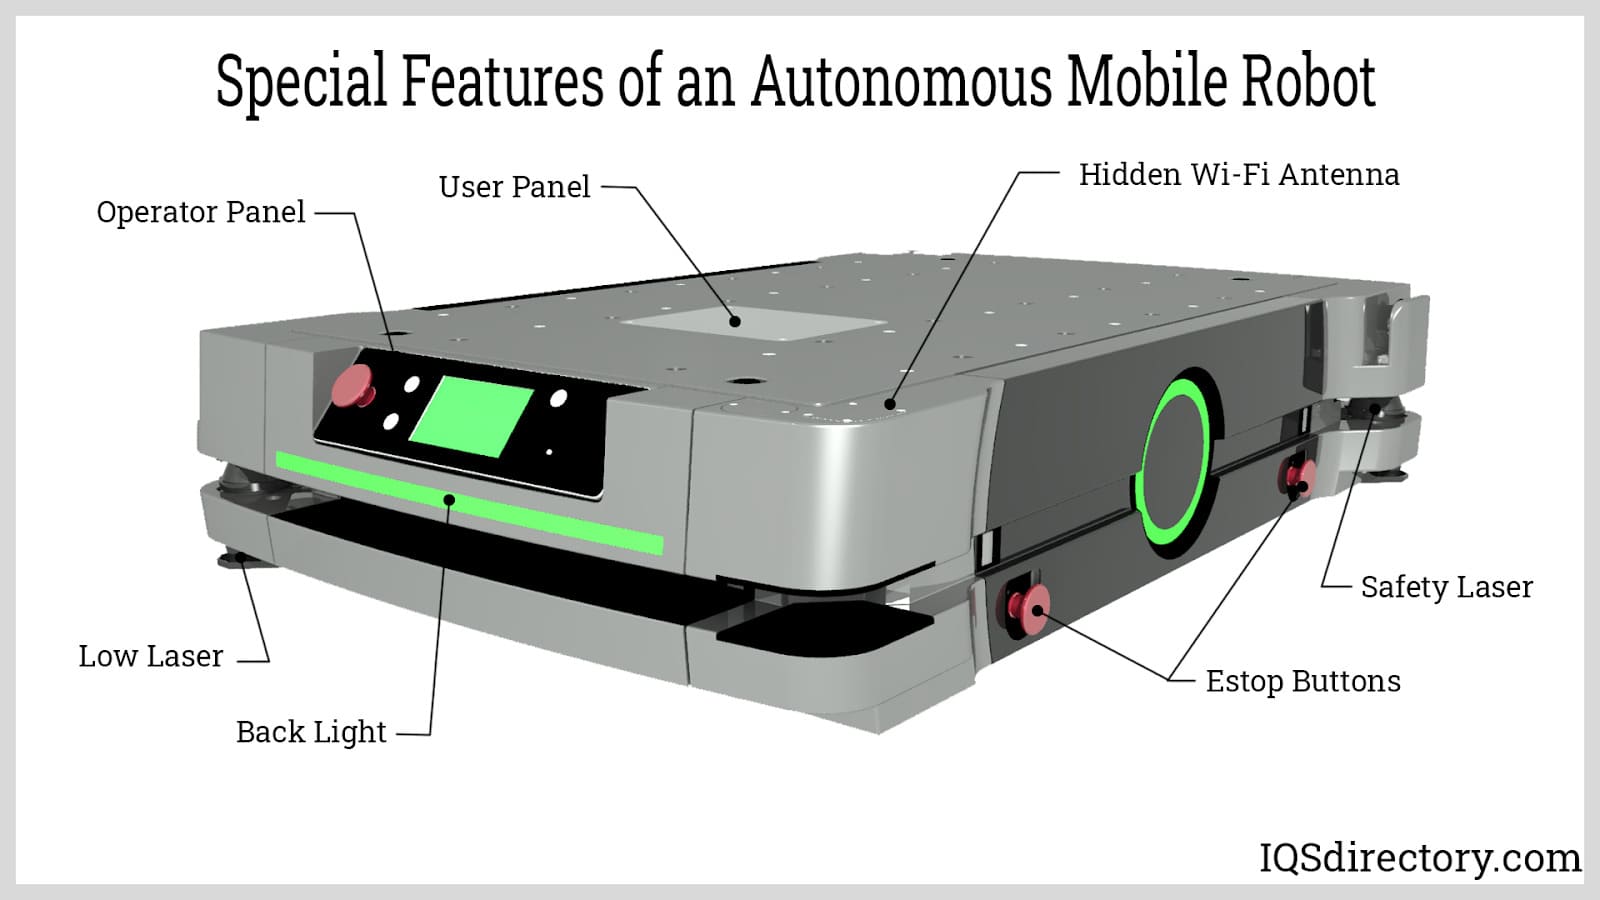 Special Features of an Autonomous Mobile Robot